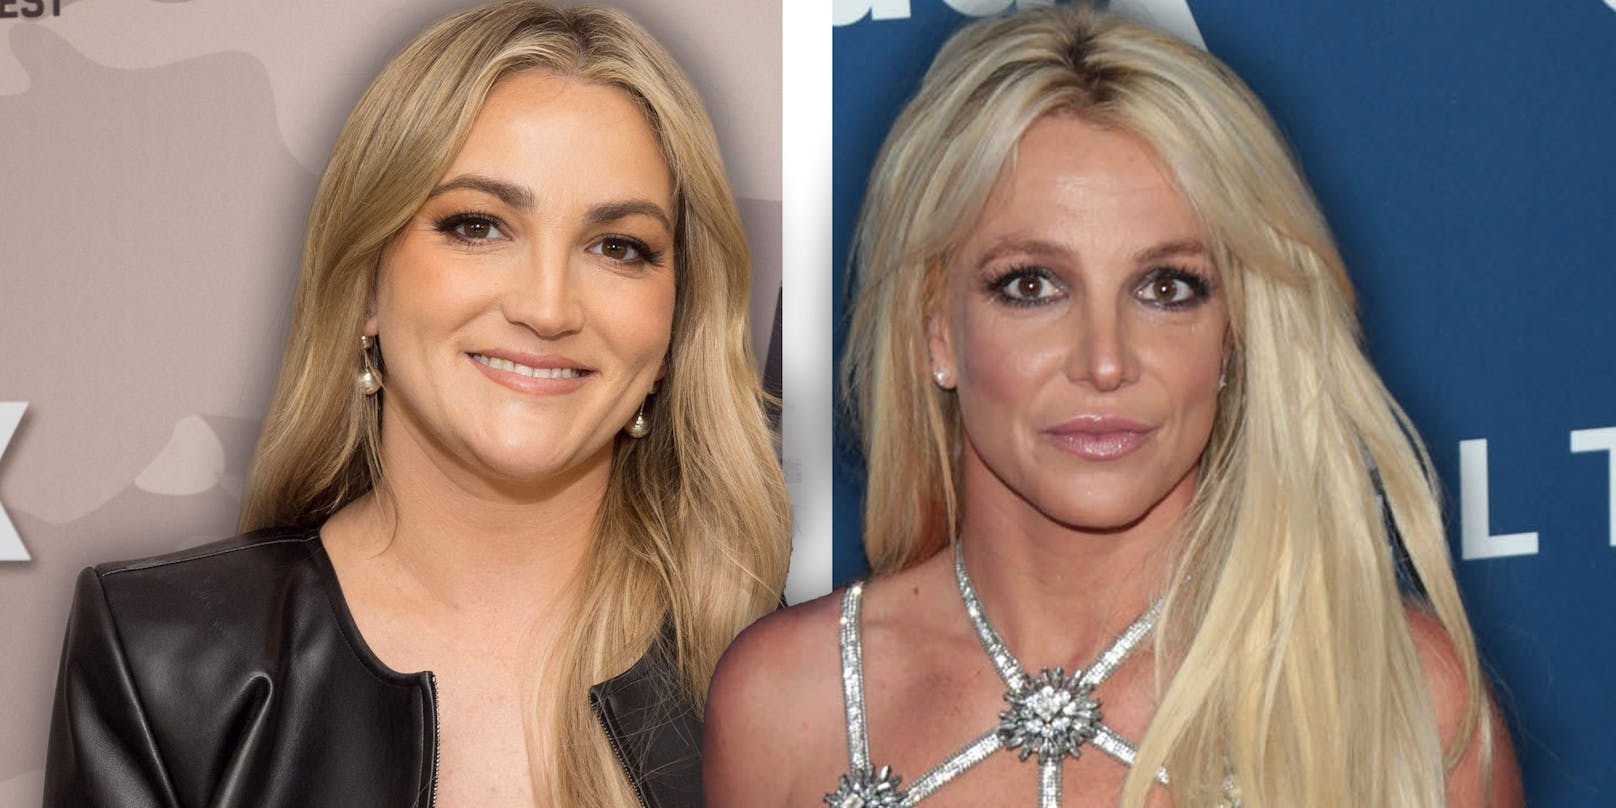 Schwester von Britney Spears aus TV-Show geworfen